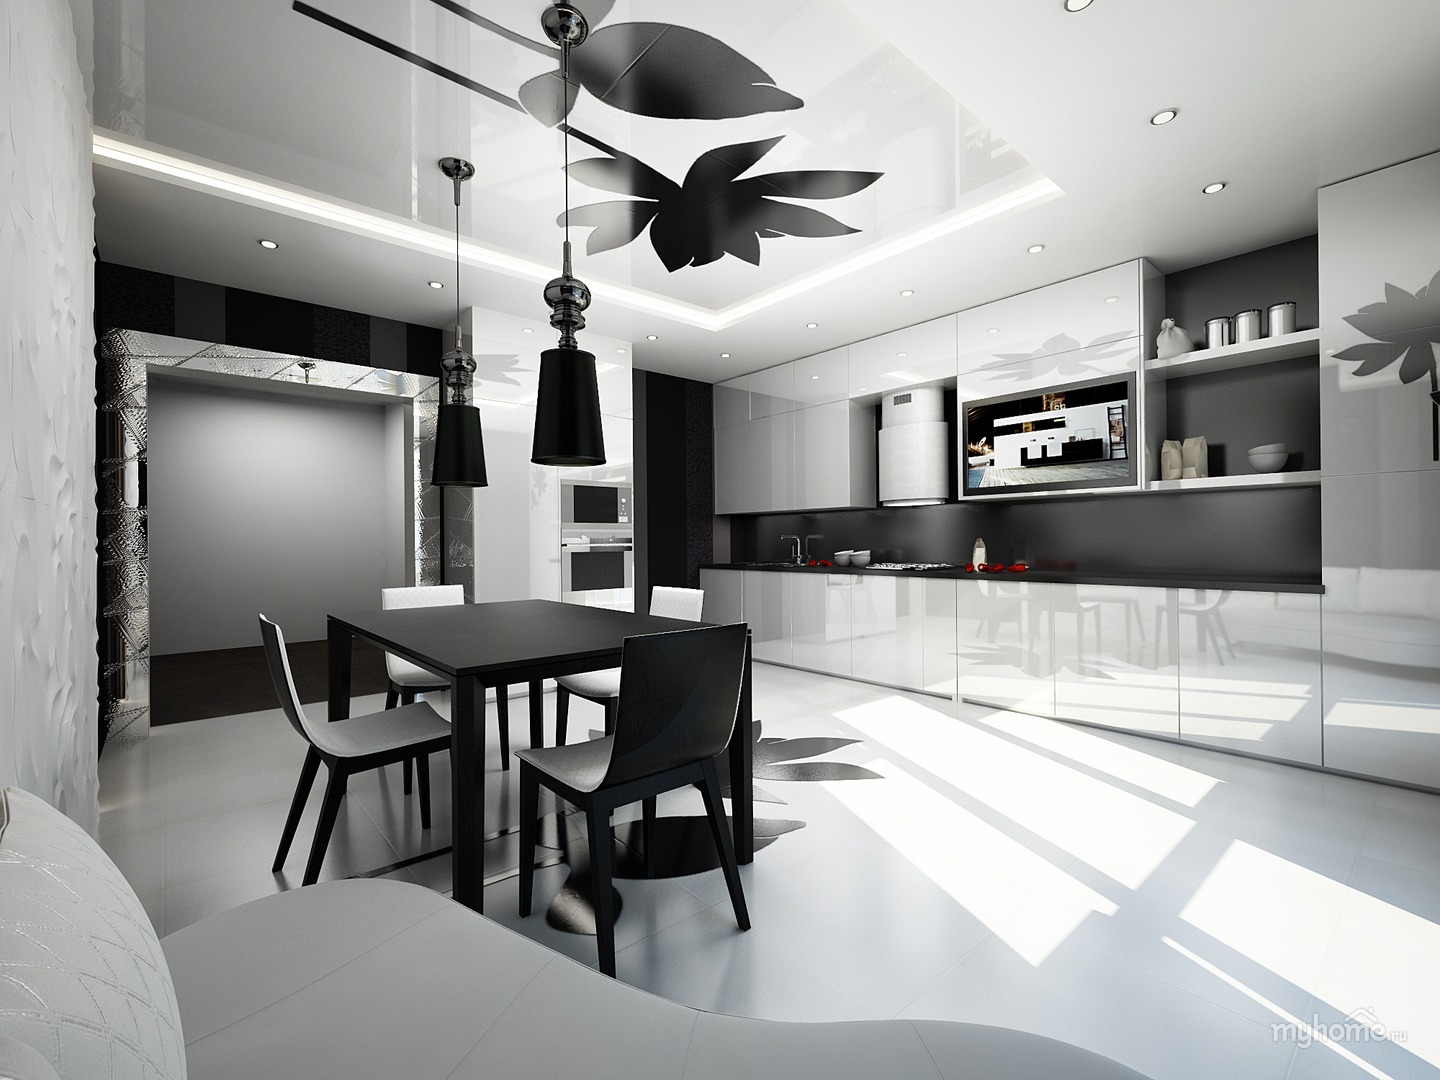 Кухня гостиная черная. Черно белая кухня гостиная. Кухня в черно белом стиле. Черно-белые кухни в интерьере. Интерьер в черно белых тонах.